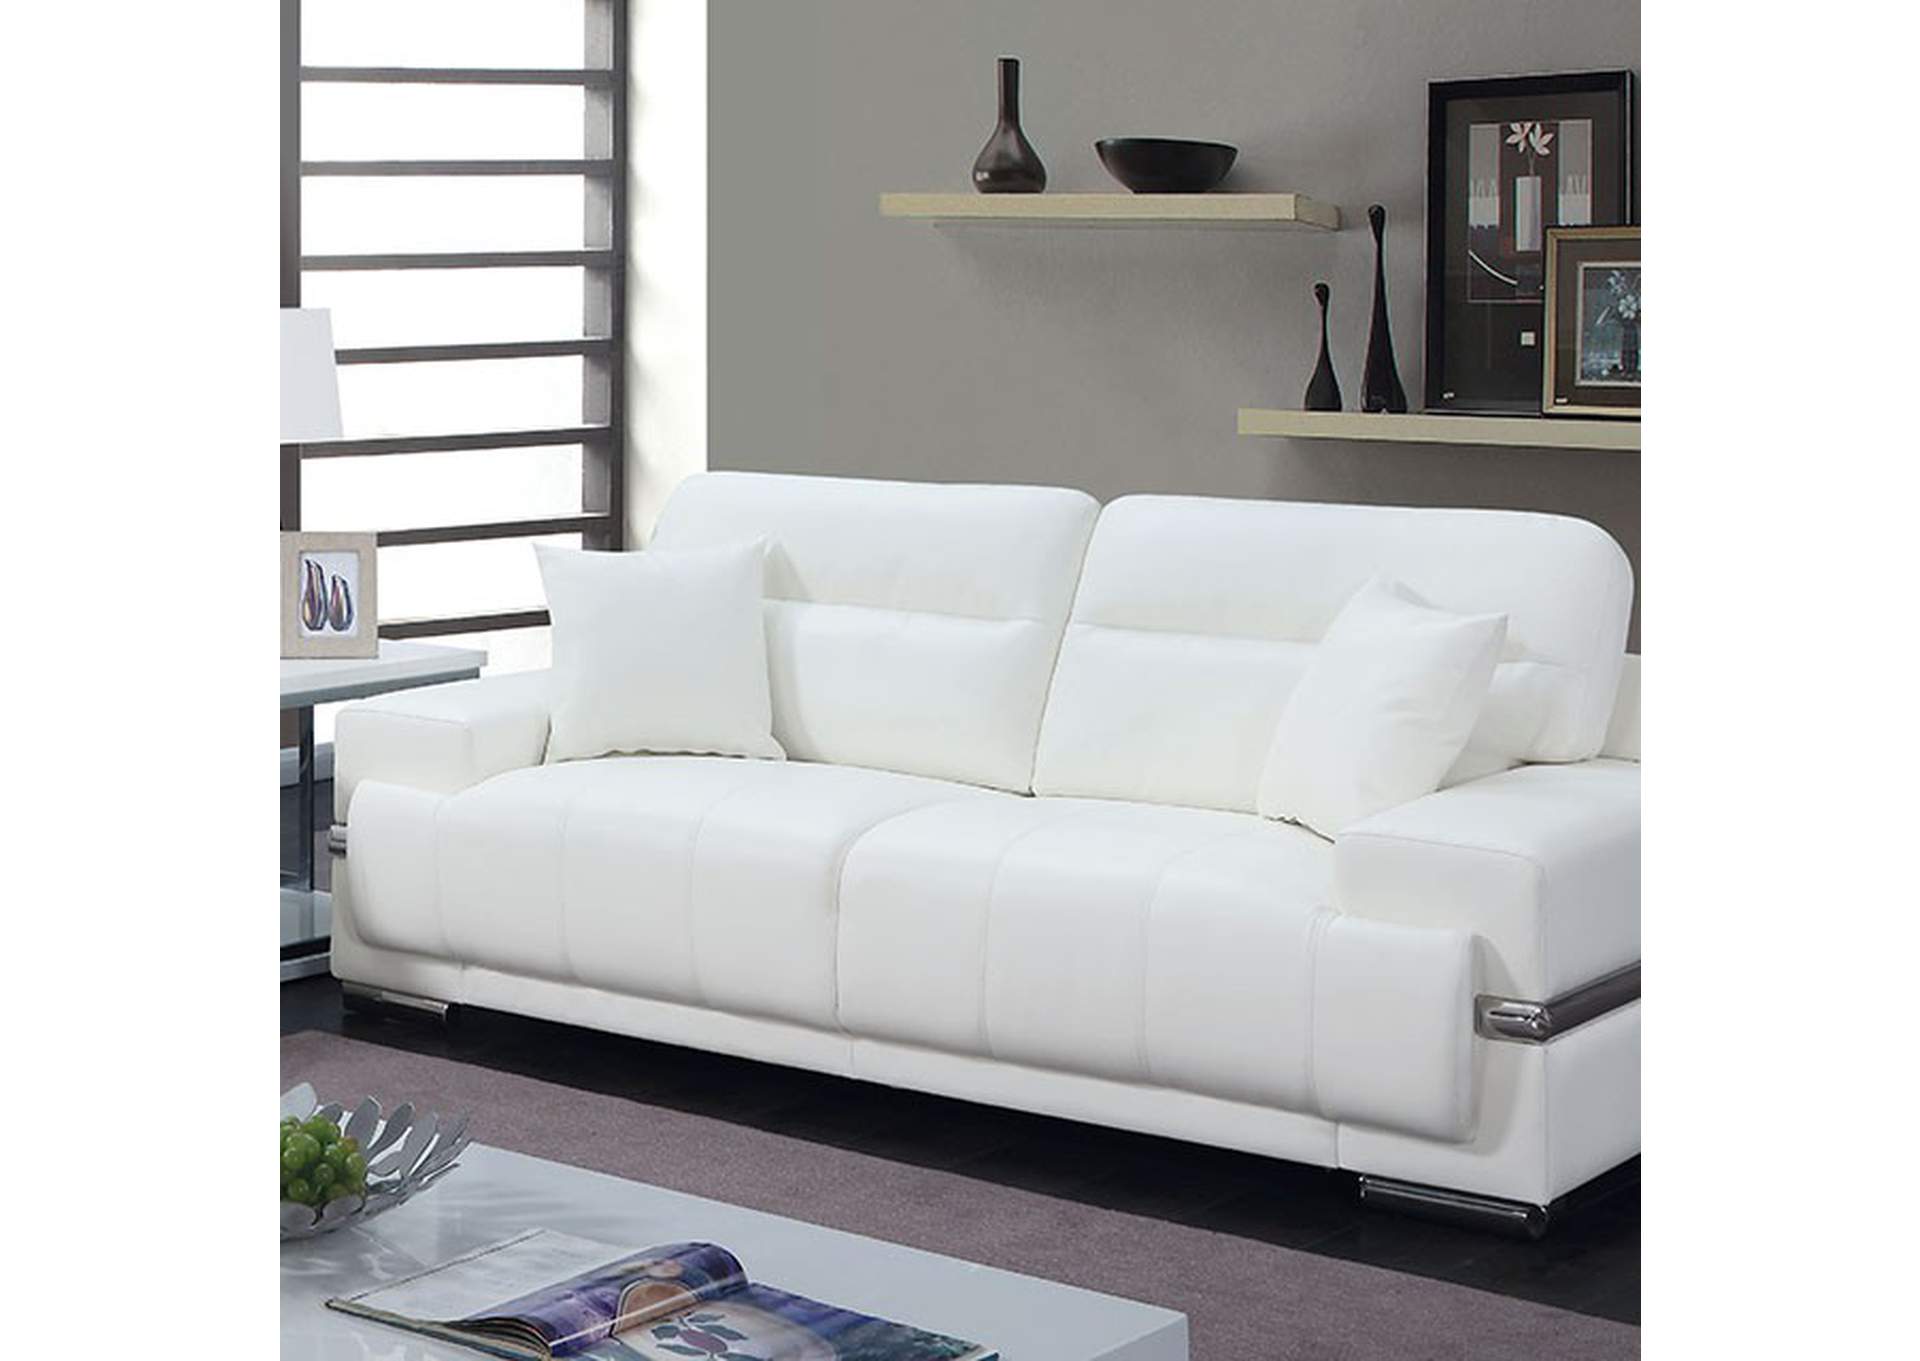 Zibak Sofa,Furniture of America